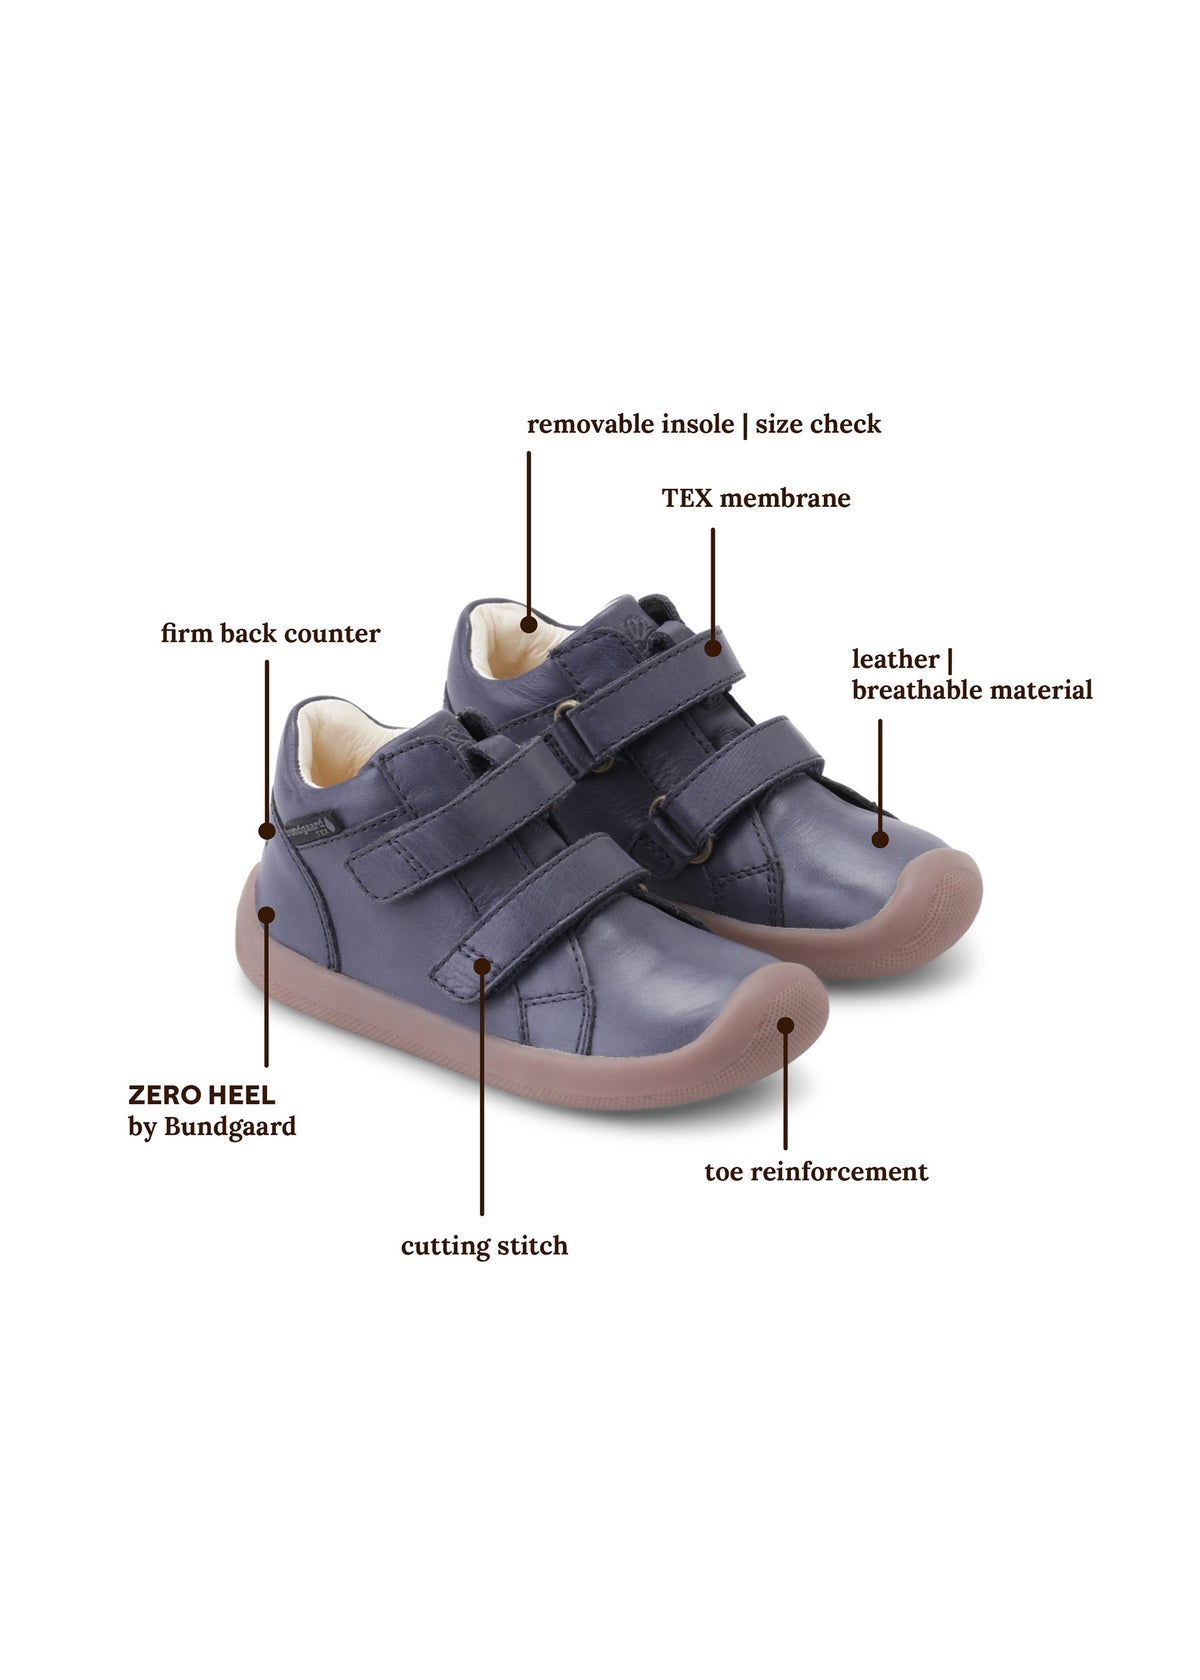 Kardborrsneakers för barn med TEX-membran - The Walk Velcro Tex, mörkblå, Bundgaard Zero Heel